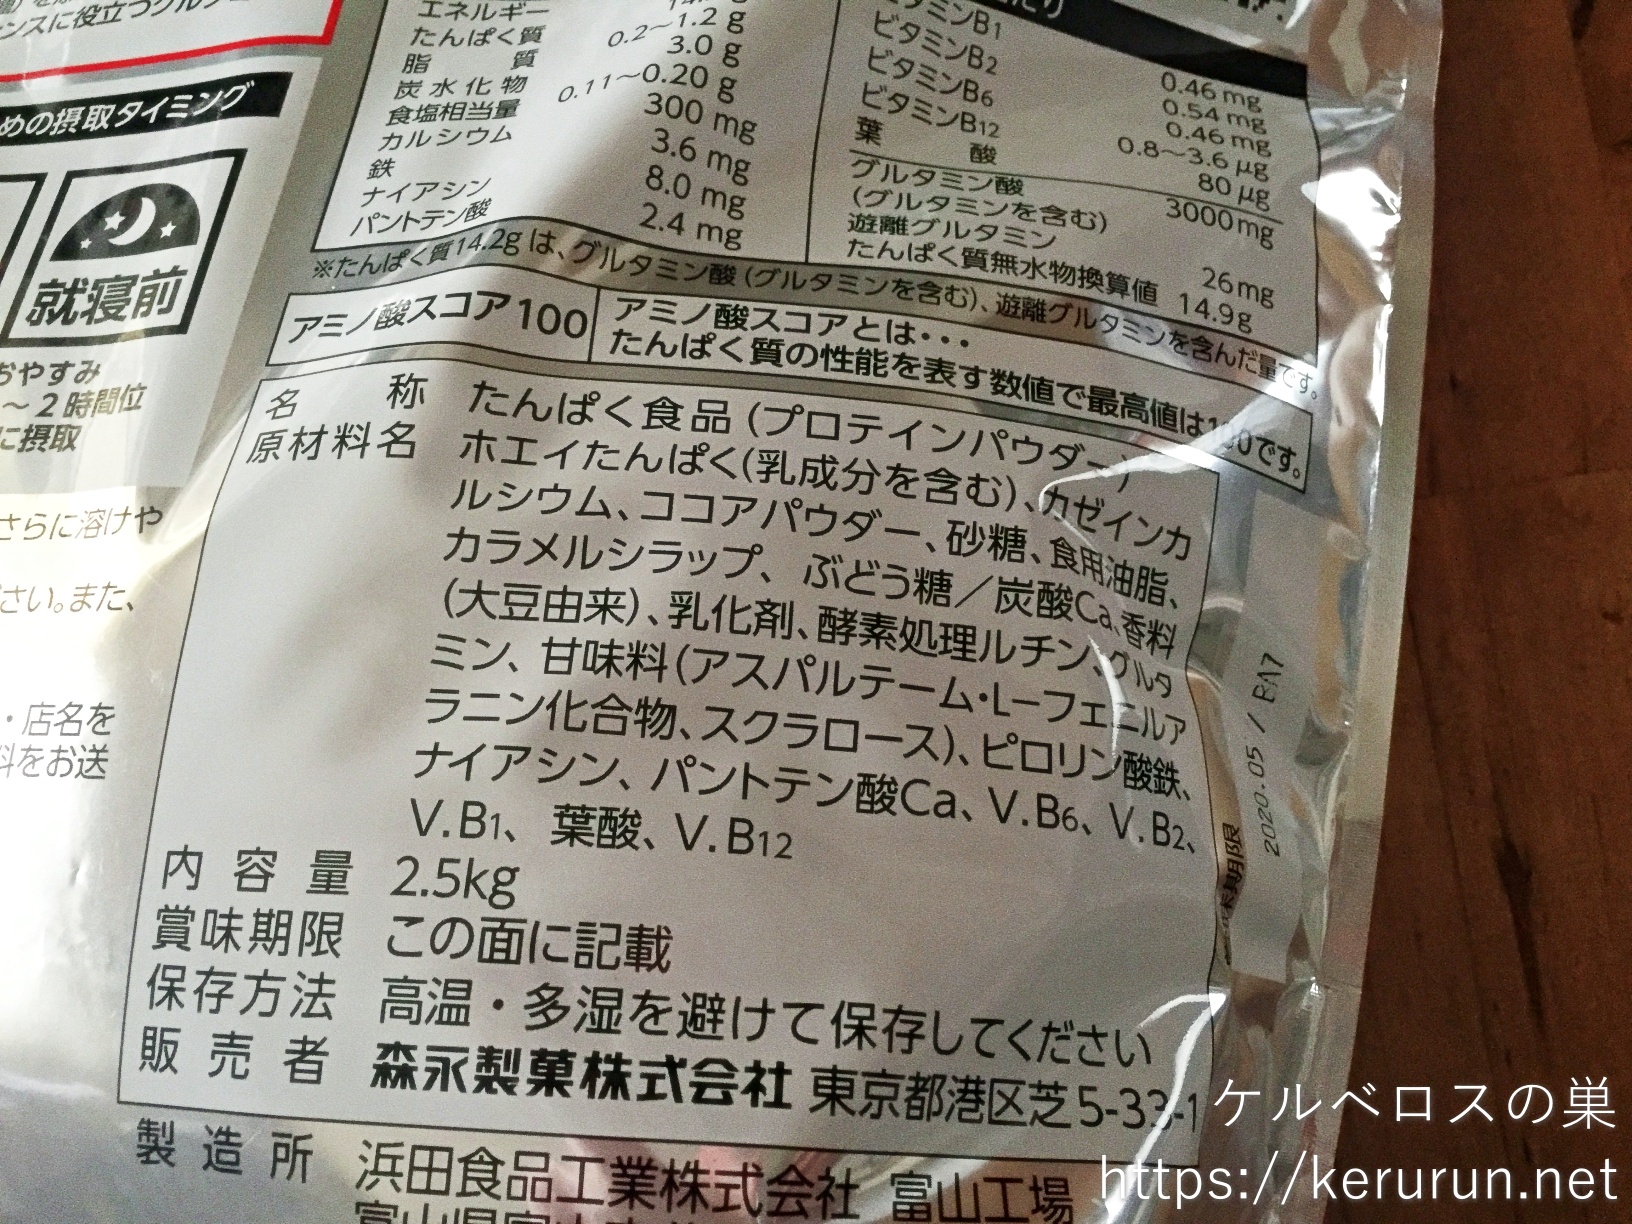 【コストコ】マッスルフィット プロテイン ココア味 2.5kg